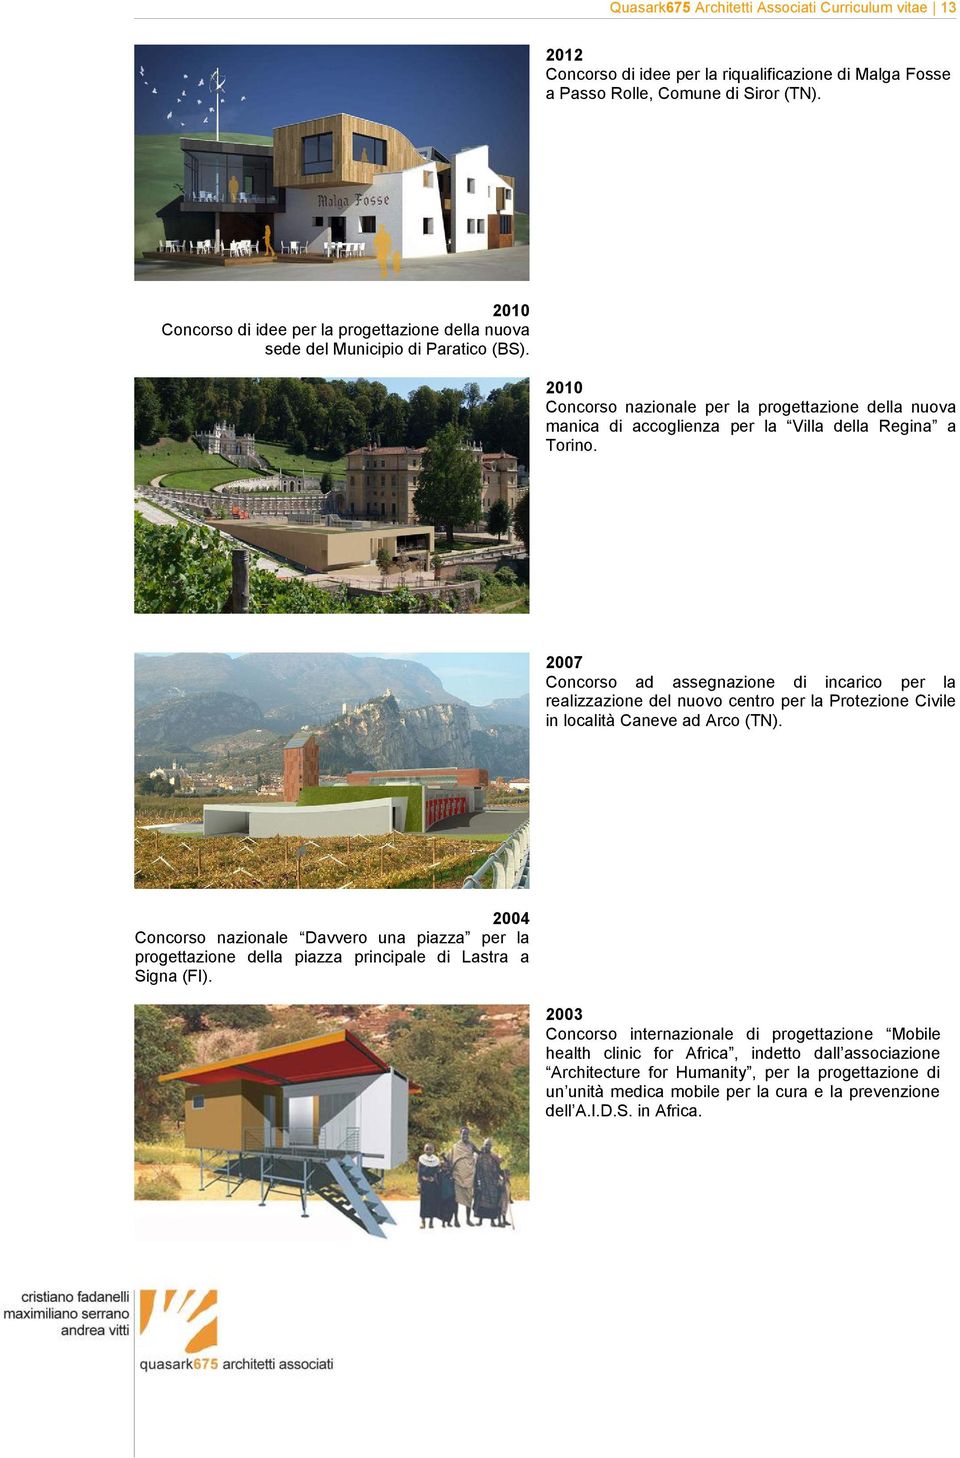 2010 Concorso nazionale per la progettazione della nuova manica di accoglienza per la Villa della Regina a Torino.